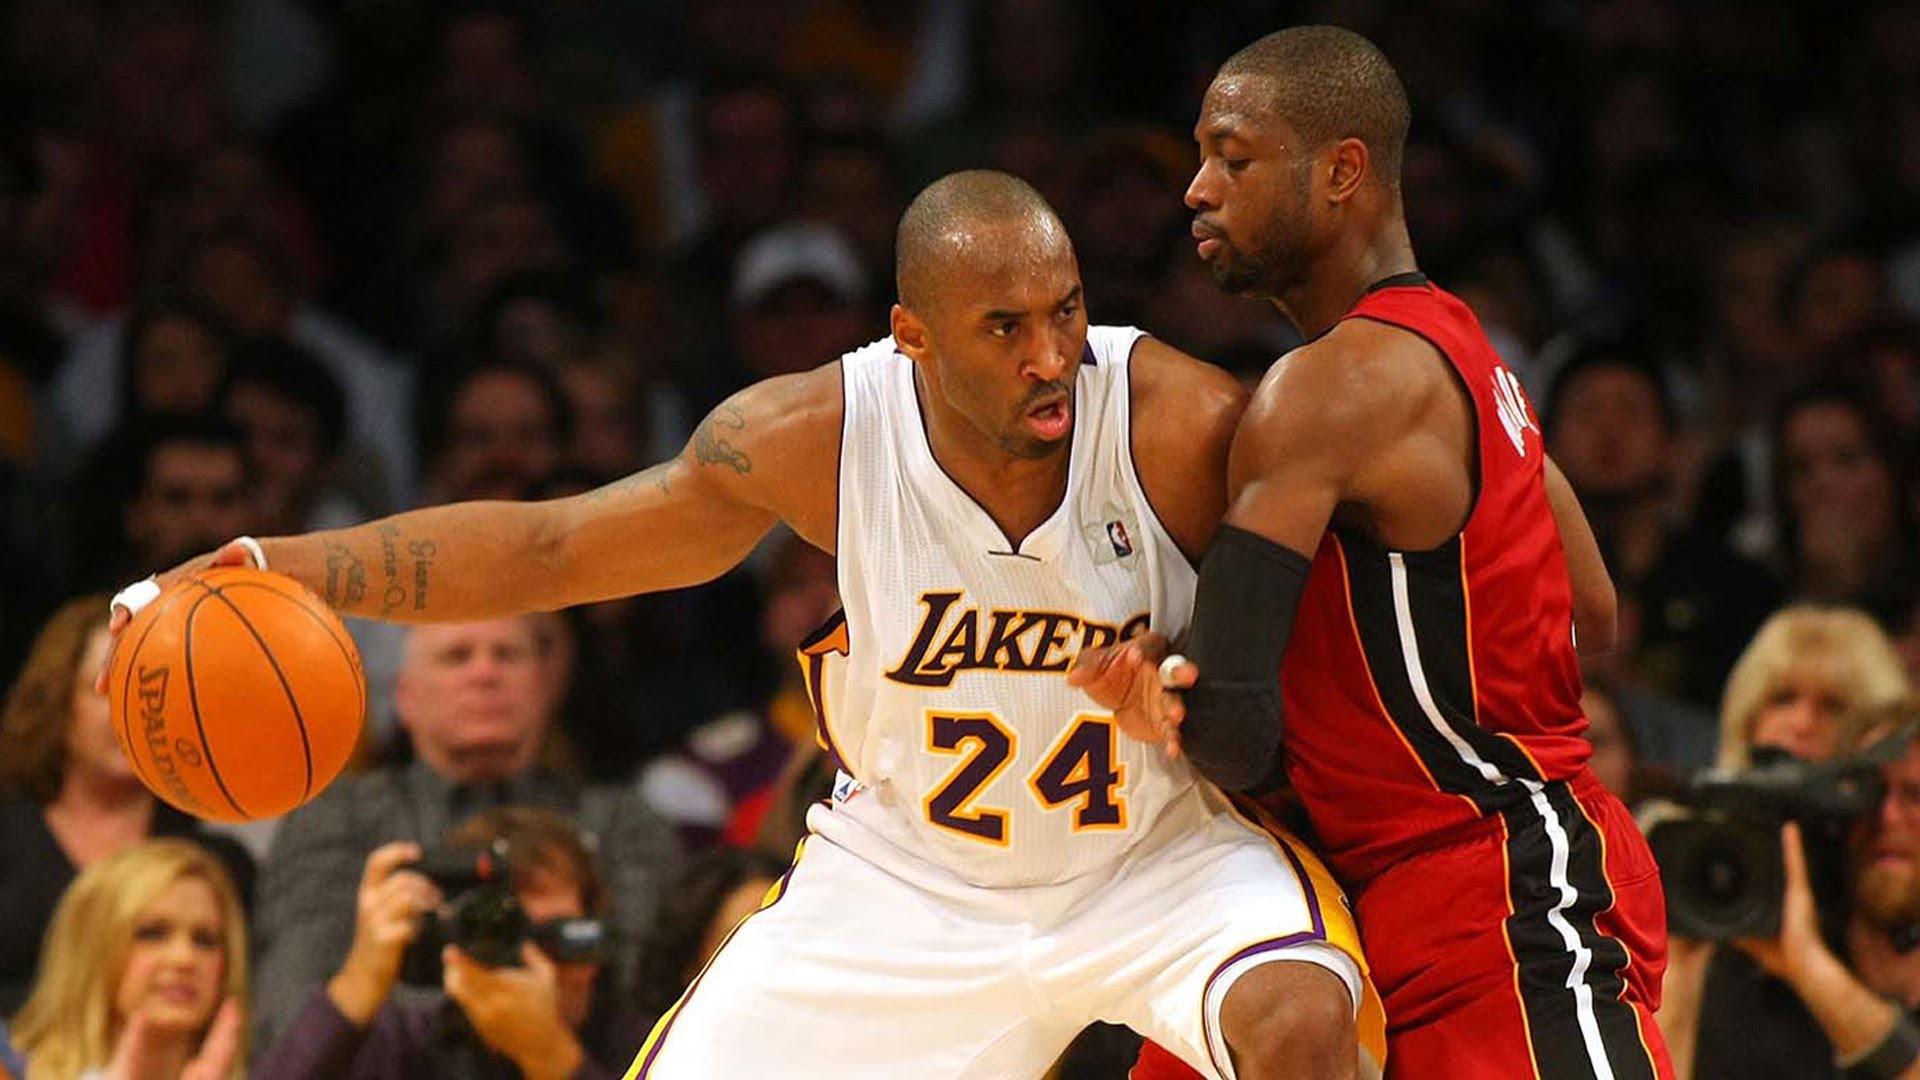 LA Lakers sẽ giúp LeBron James thay đổi lối chơi của mình như Kobe Bryant? - Ảnh 2.